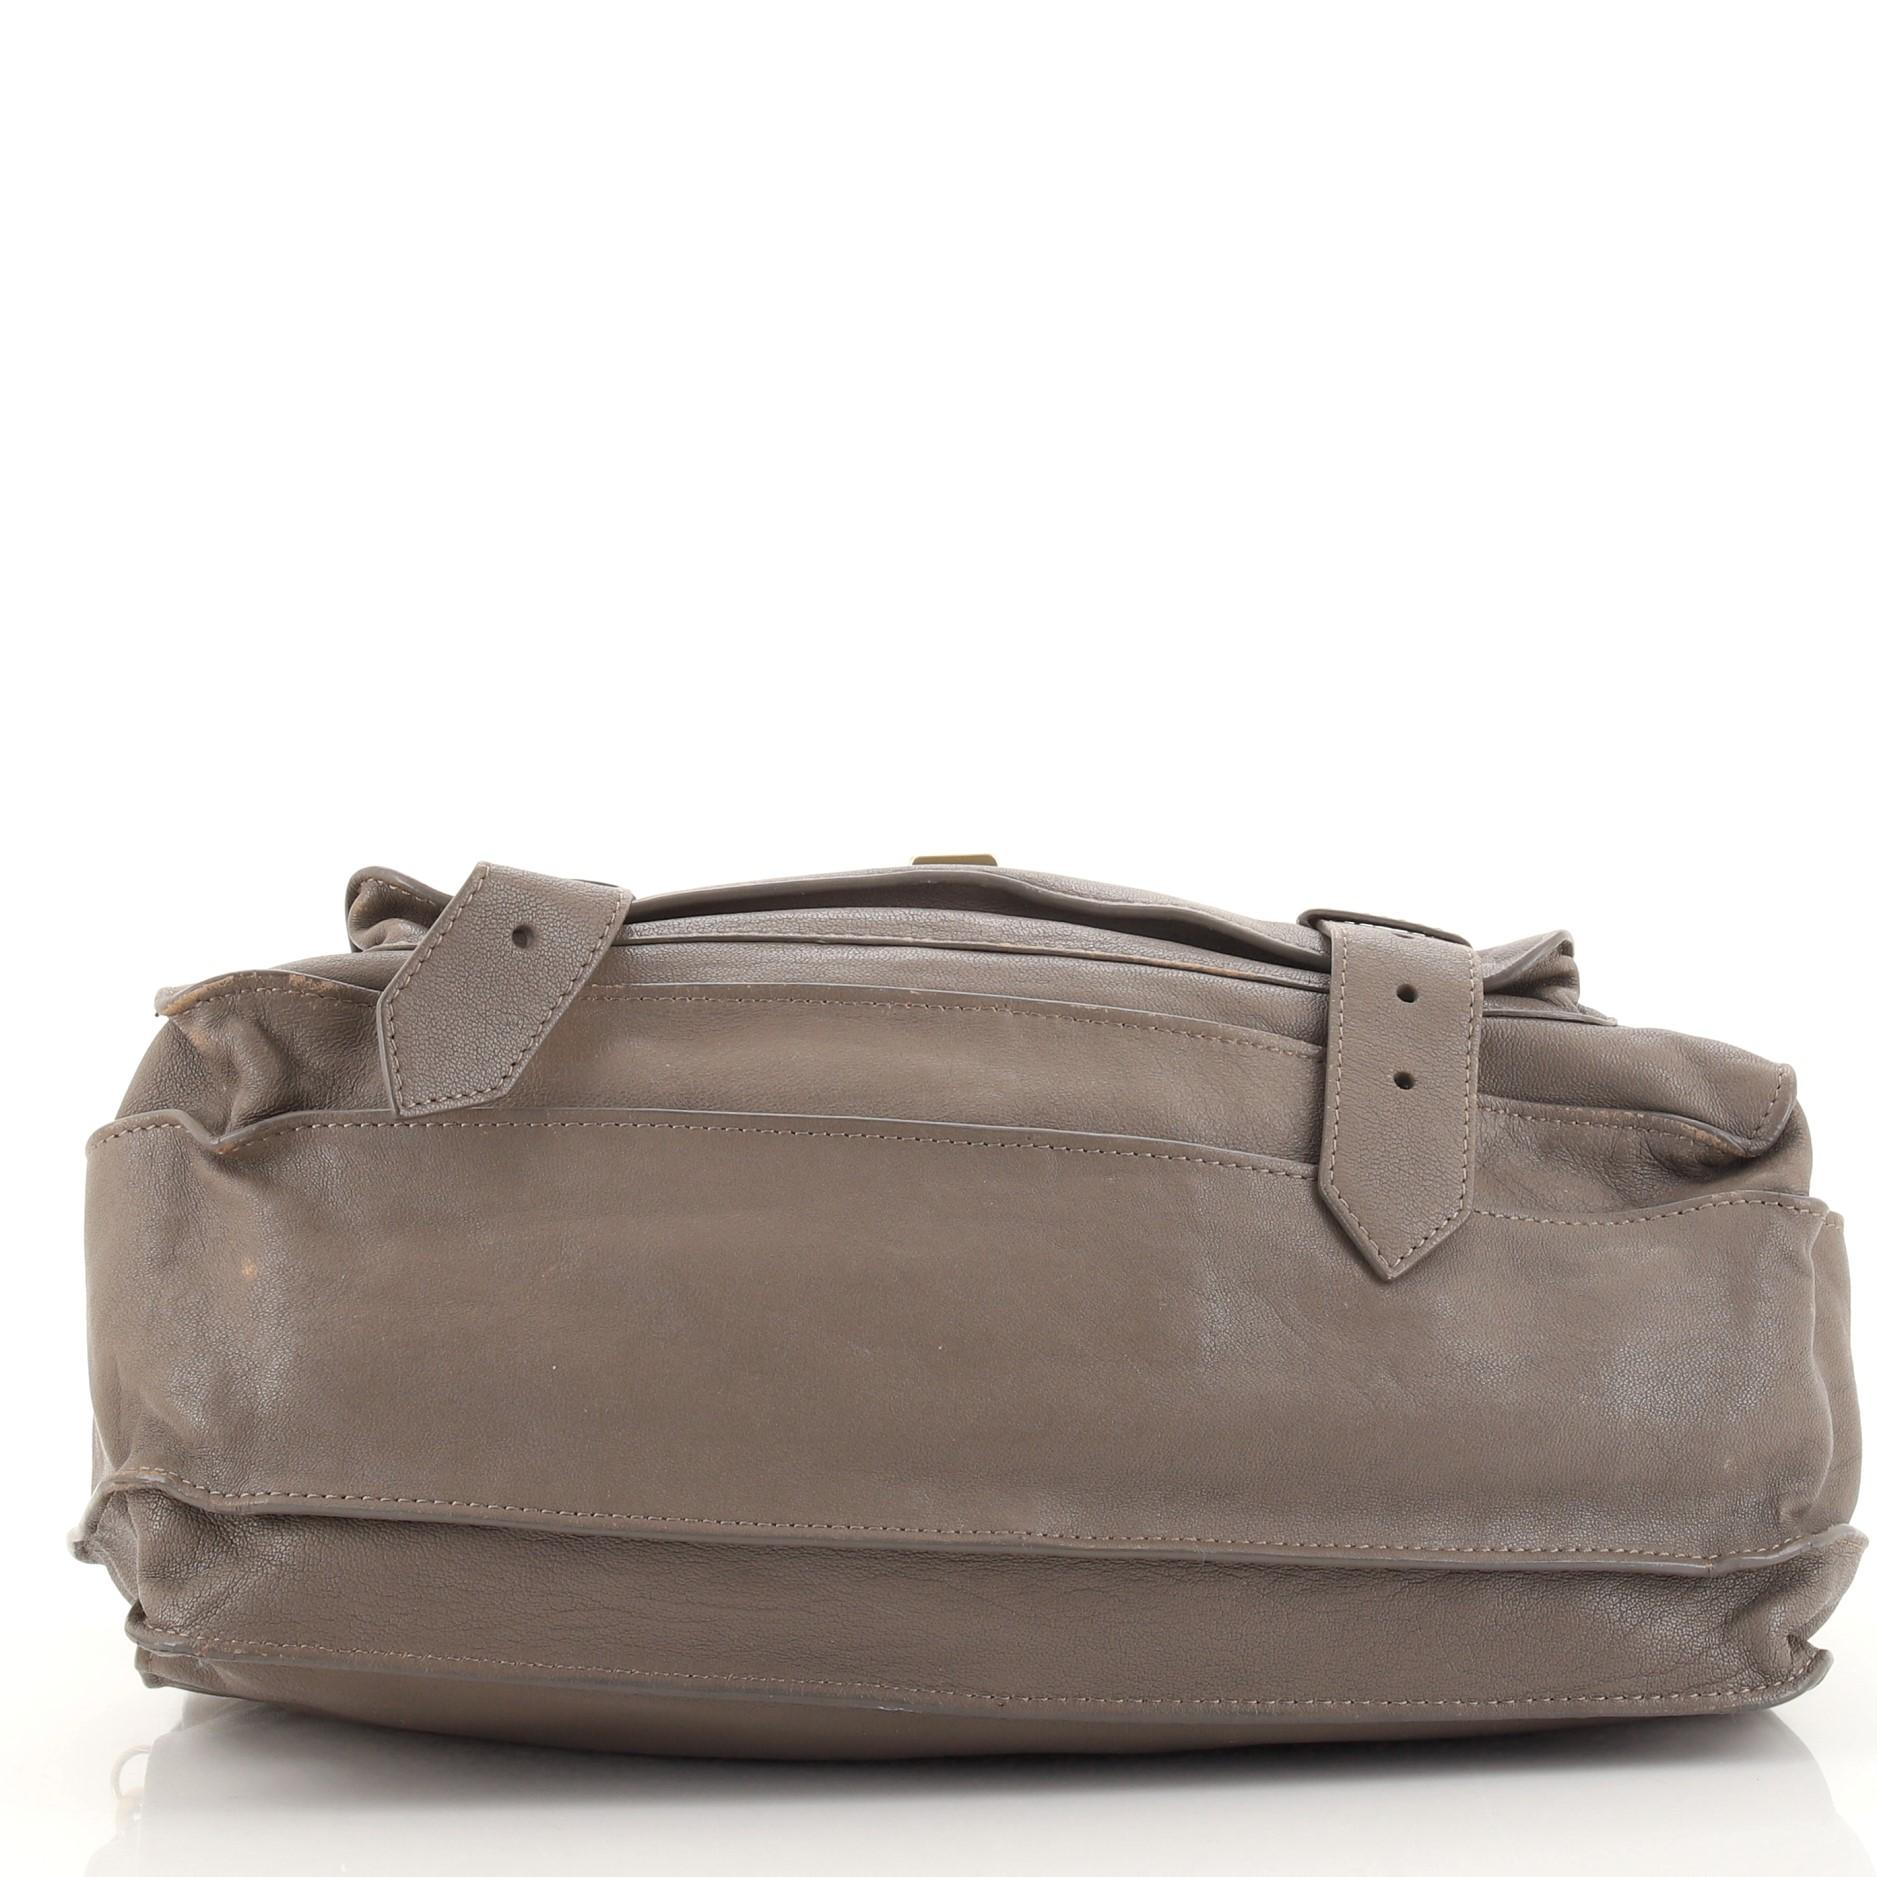 Gray Proenza Schouler PS1 Satchel Leather Medium